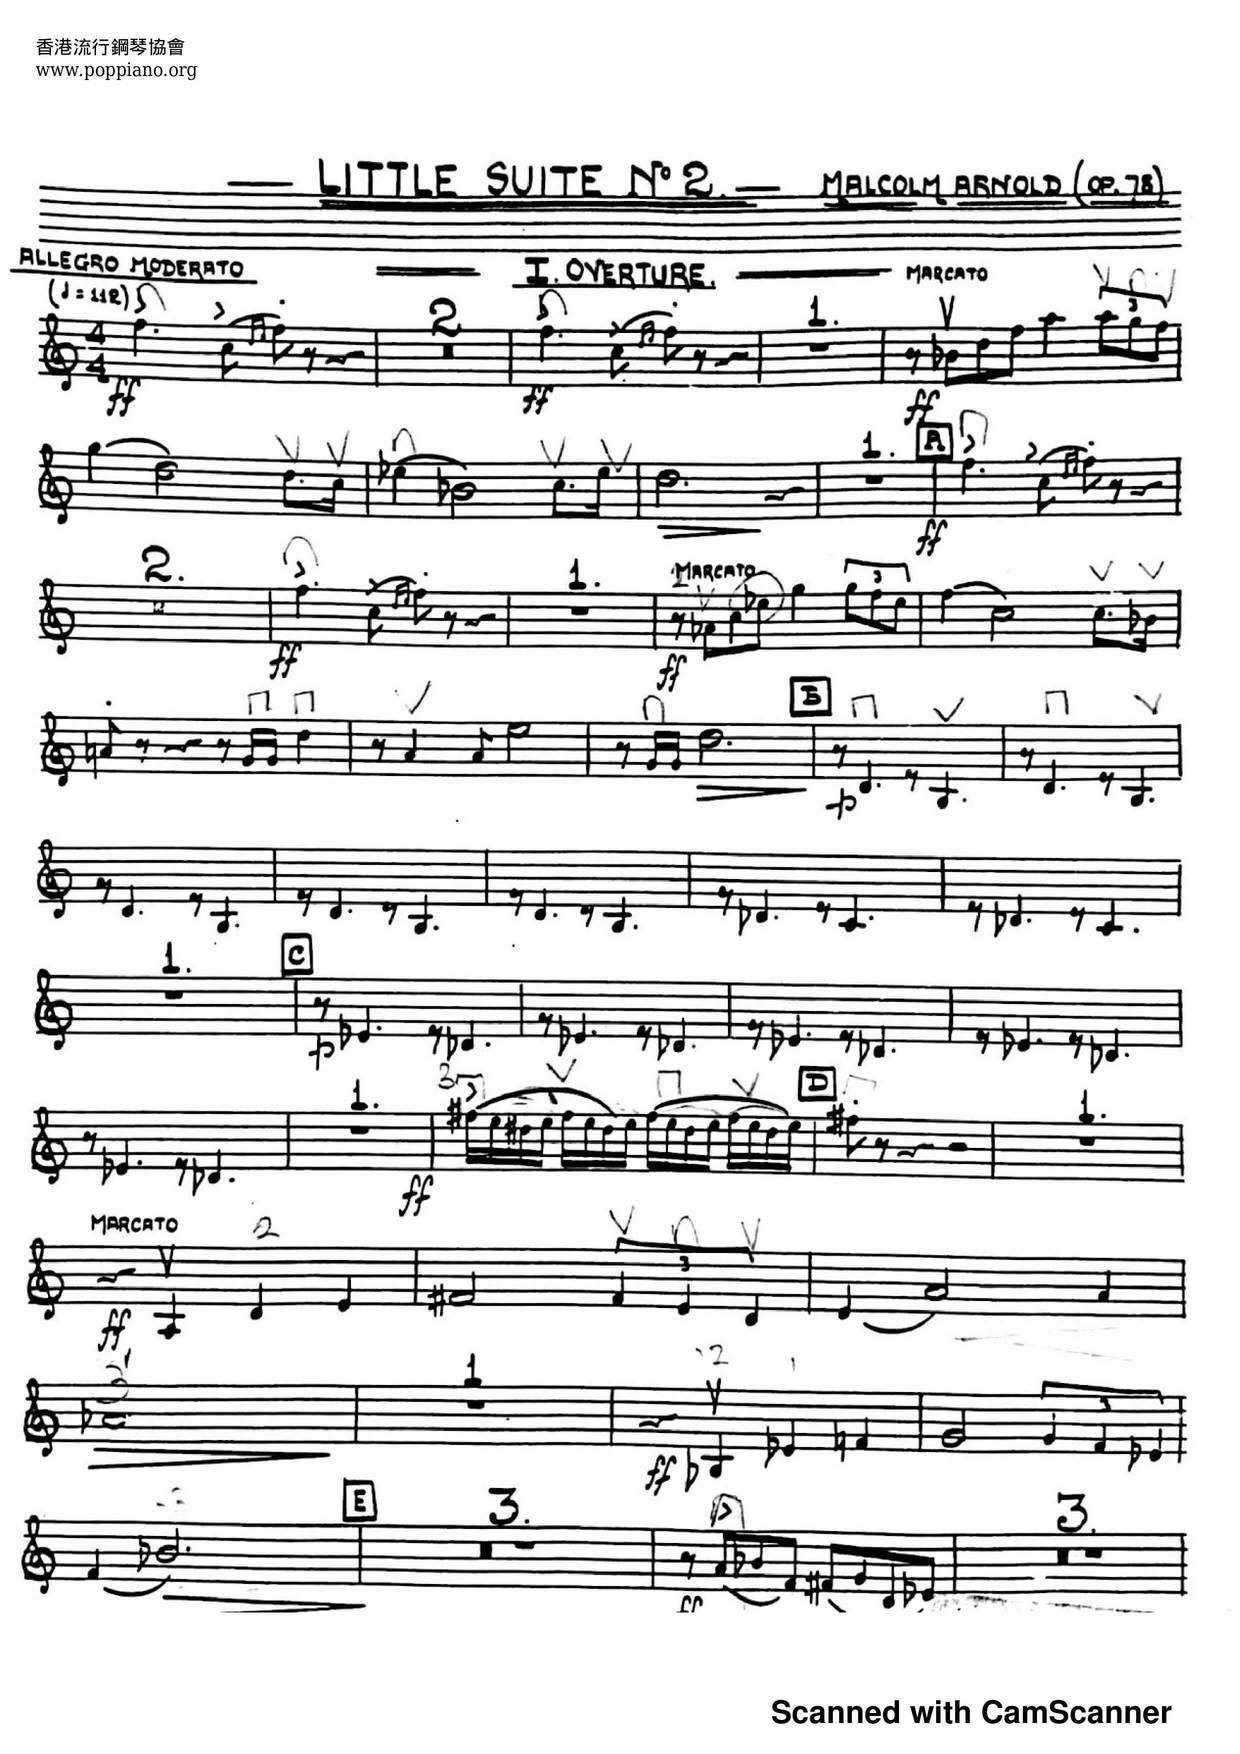 Little Suite No.2 Score